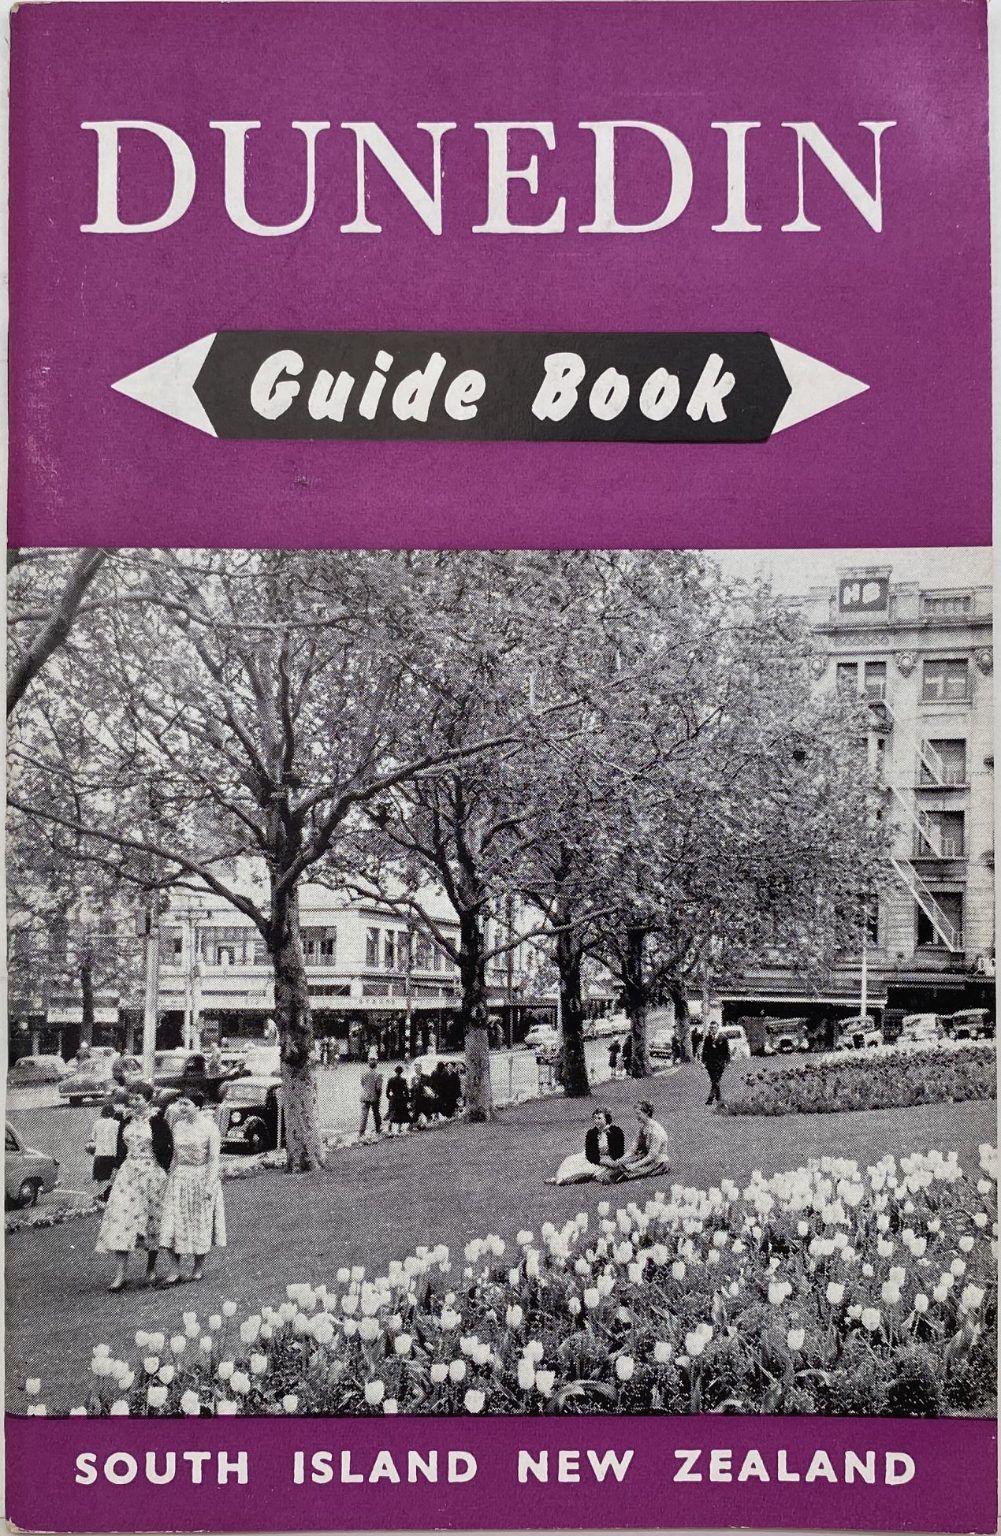 DUNEDIN Guide Book